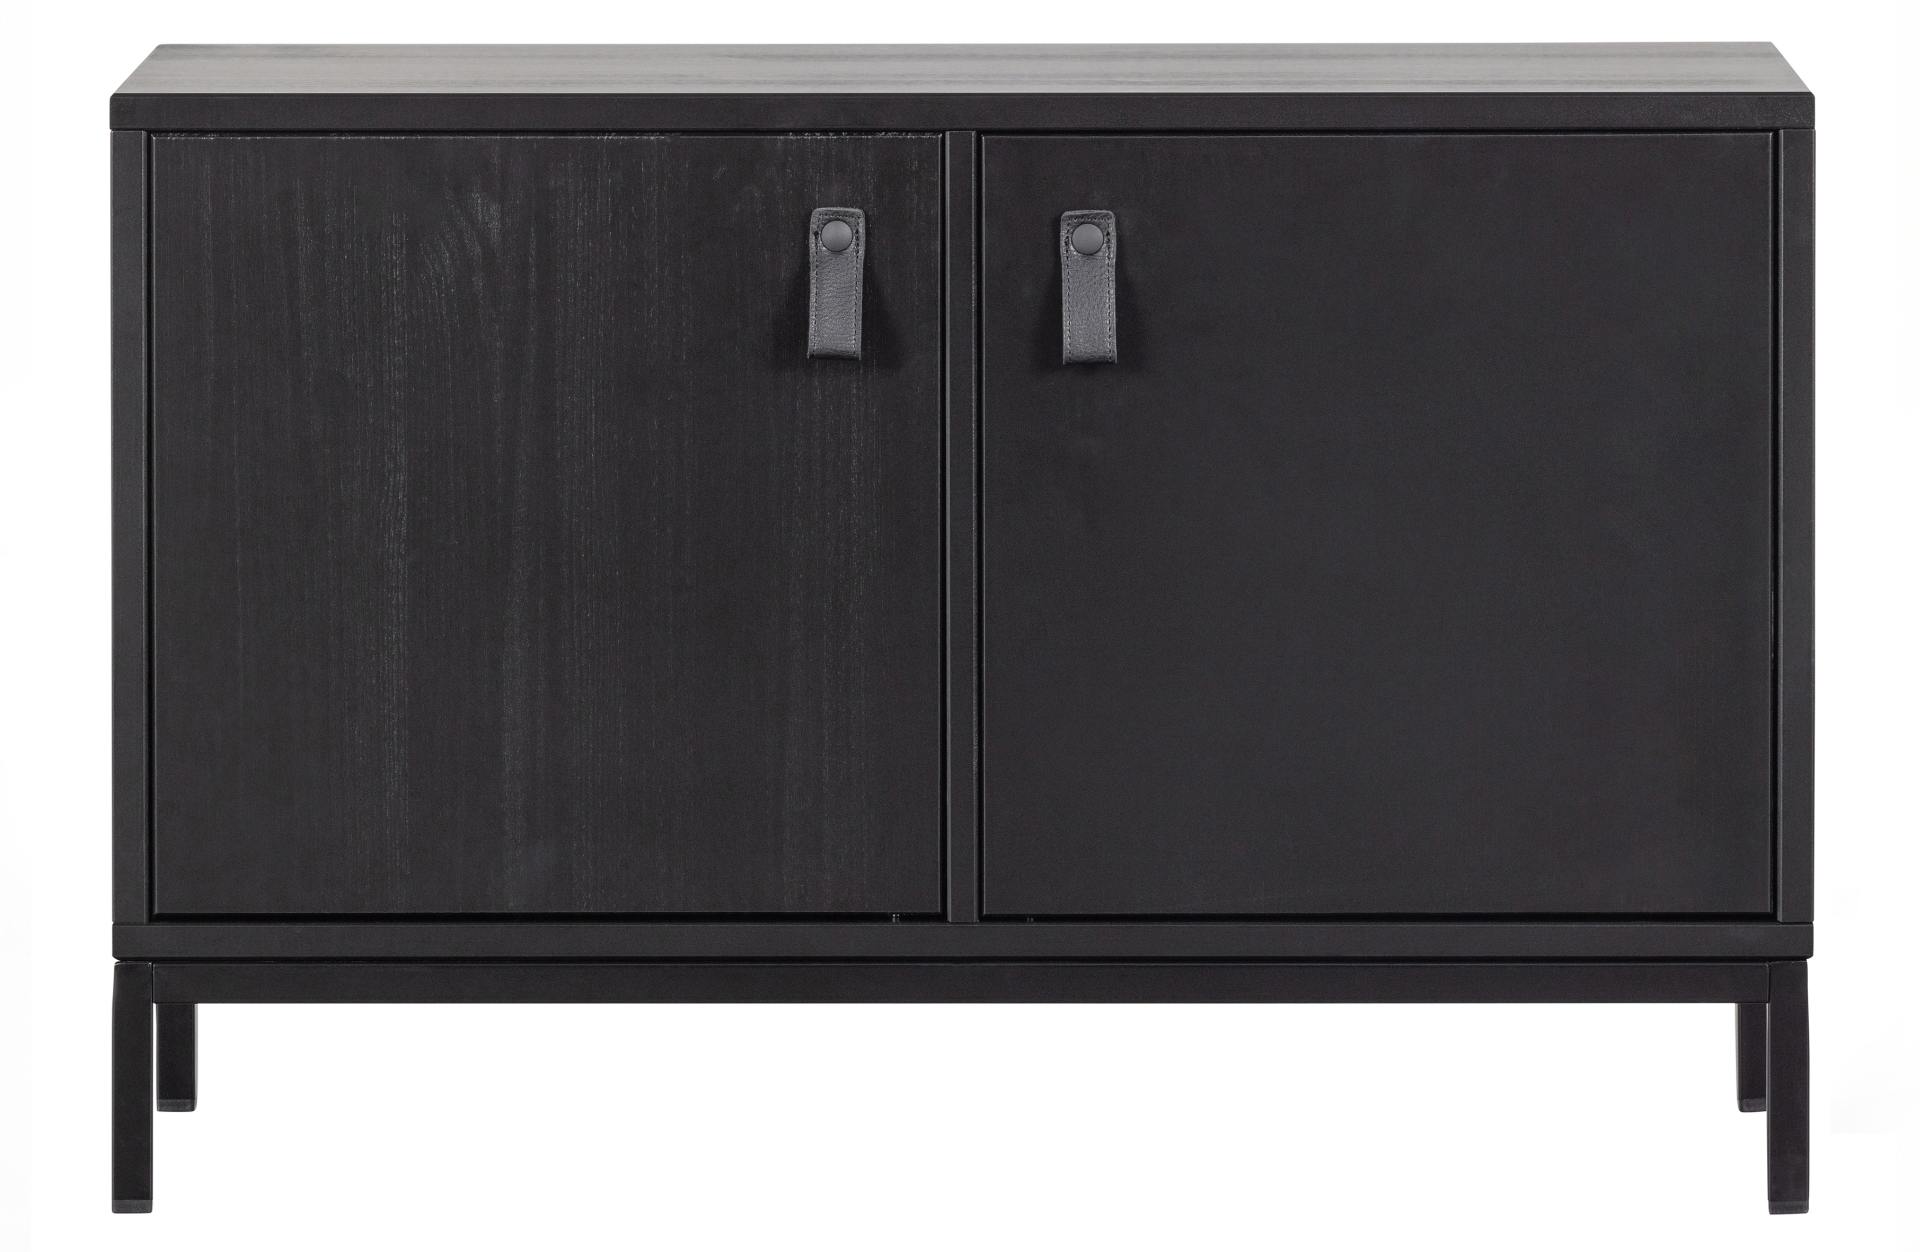 Die Kommode VT Lower Case überzeugt mit ihrem klassischen Design. Gefertigt wurde sie aus Kiefernholz, welches einen schwarzen Farbton besitzt. Das Gestell ist aus Metall und hat eine schwarze Farbe. Die Kommode verfügt über zwei Türen.